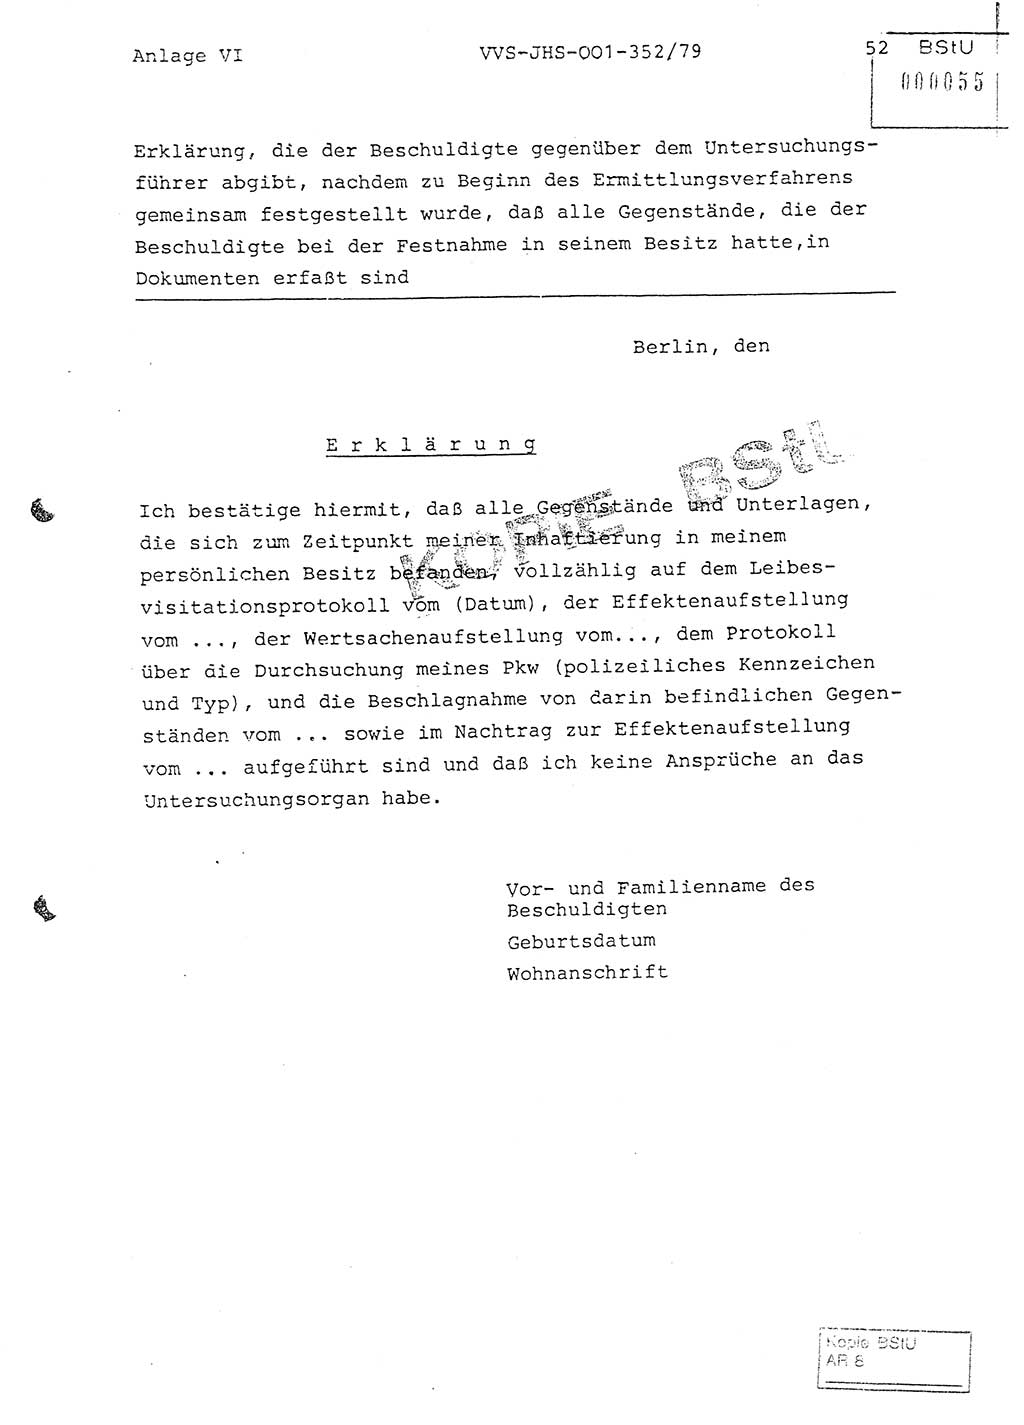 Diplomarbeit Hauptmann Peter Wittum (BV Bln. Abt. HA Ⅸ), Ministerium für Staatssicherheit (MfS) [Deutsche Demokratische Republik (DDR)], Juristische Hochschule (JHS), Vertrauliche Verschlußsache (VVS) o001-352/79, Potsdam 1979, Seite 52 (Dipl.-Arb. MfS DDR JHS VVS o001-352/79 1979, S. 52)